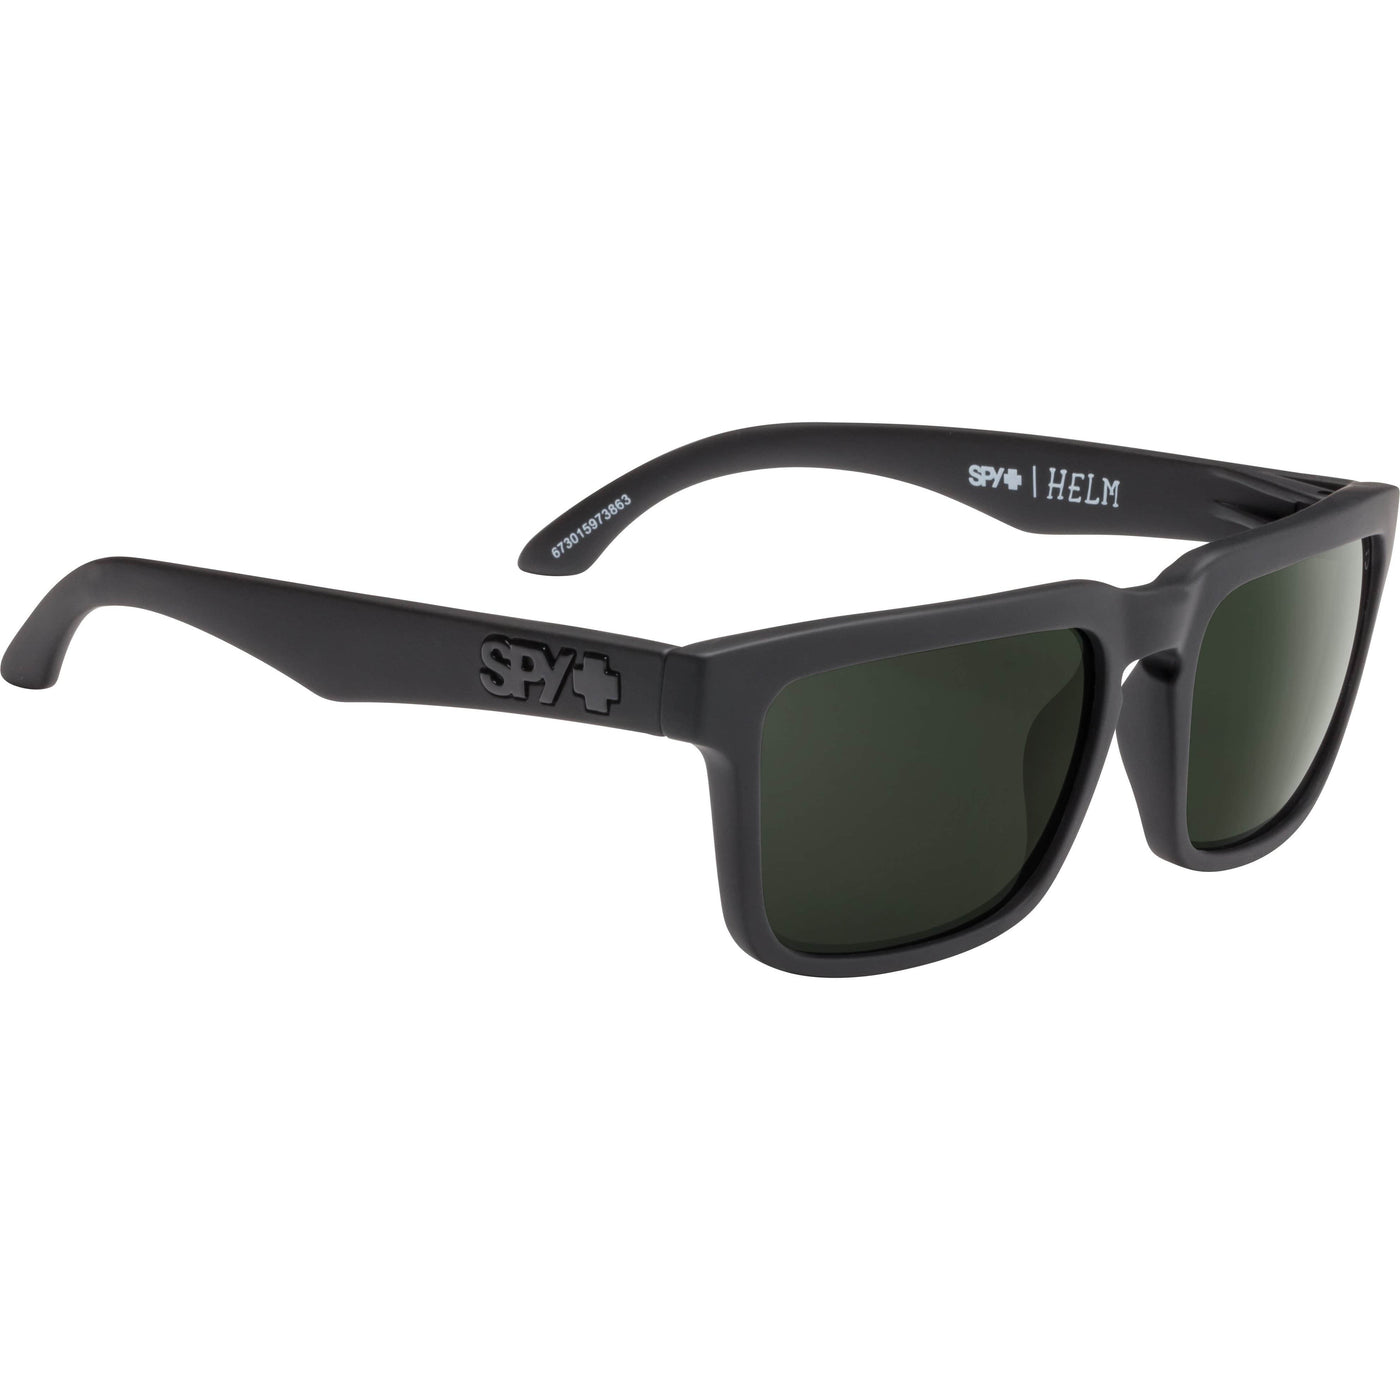 black frame gray lens sunglasses